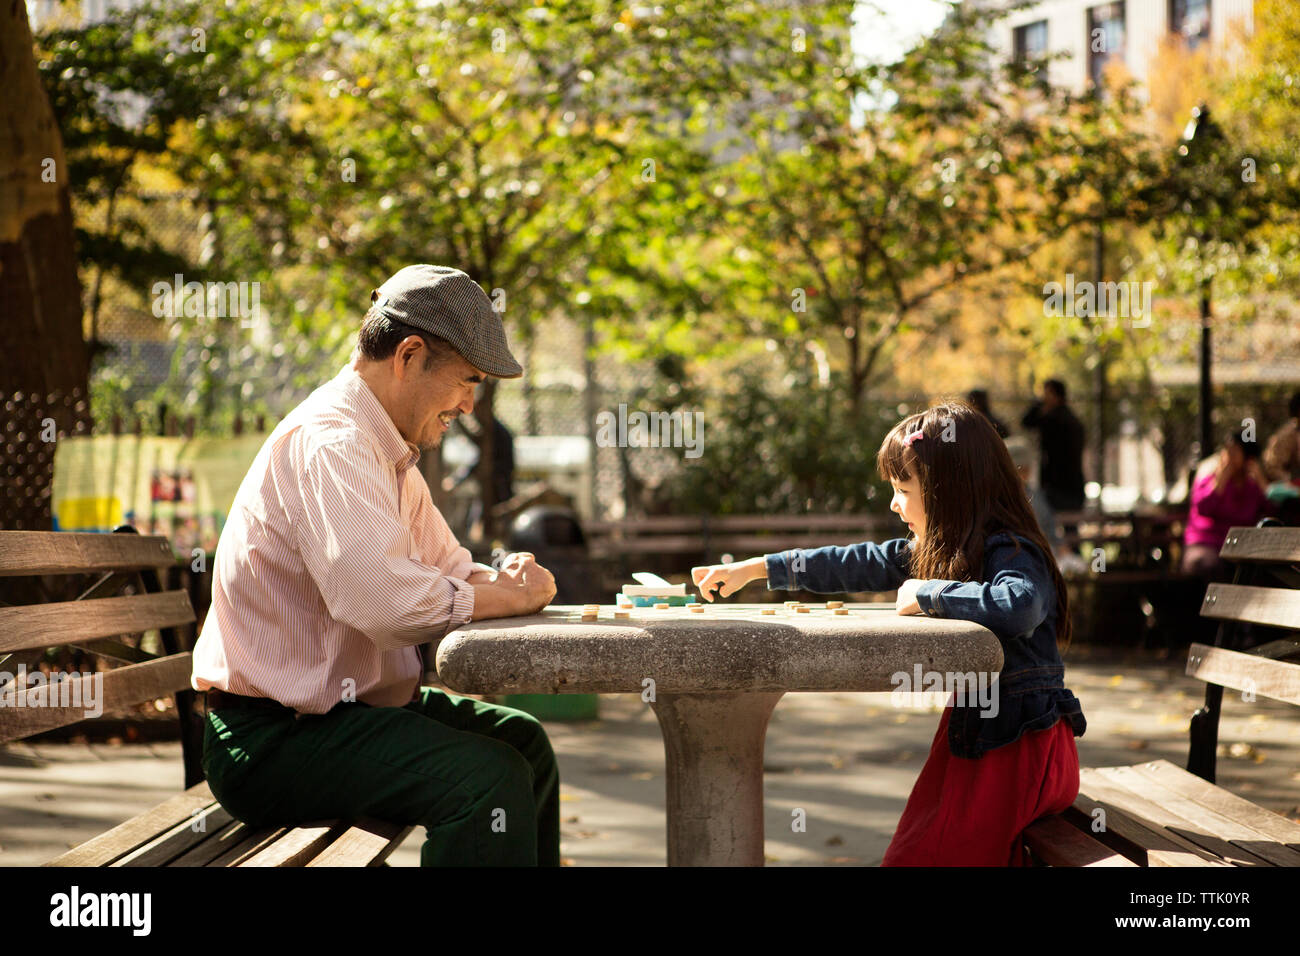 Grand-père et sa petite-fille jouer à jeu alors que sitting at table in park Banque D'Images